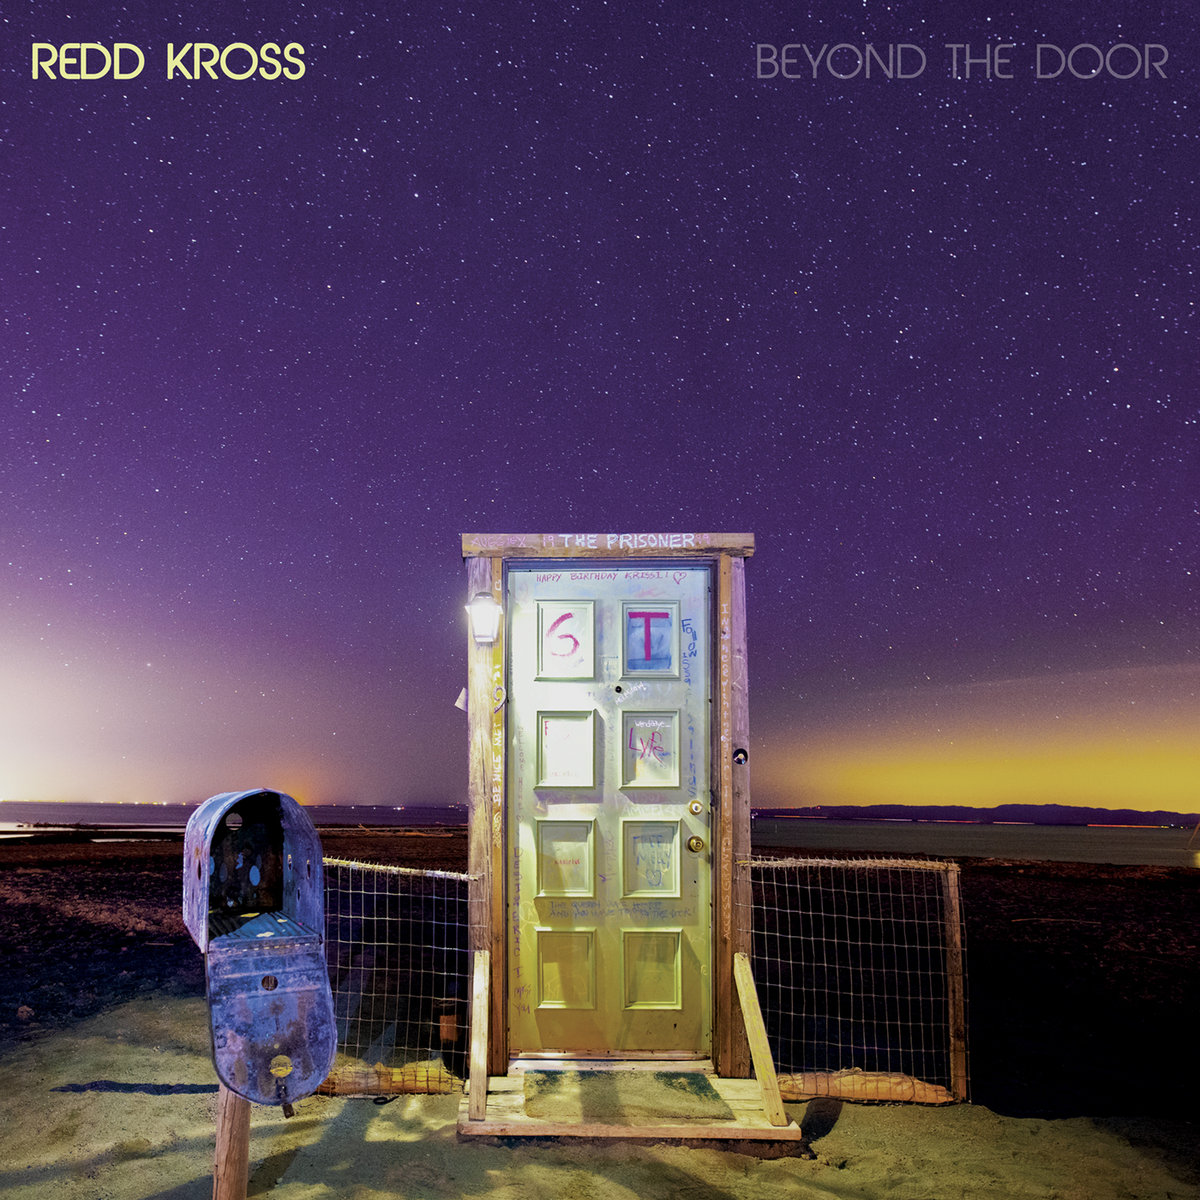 Redd Kross "Beyond the door" LP